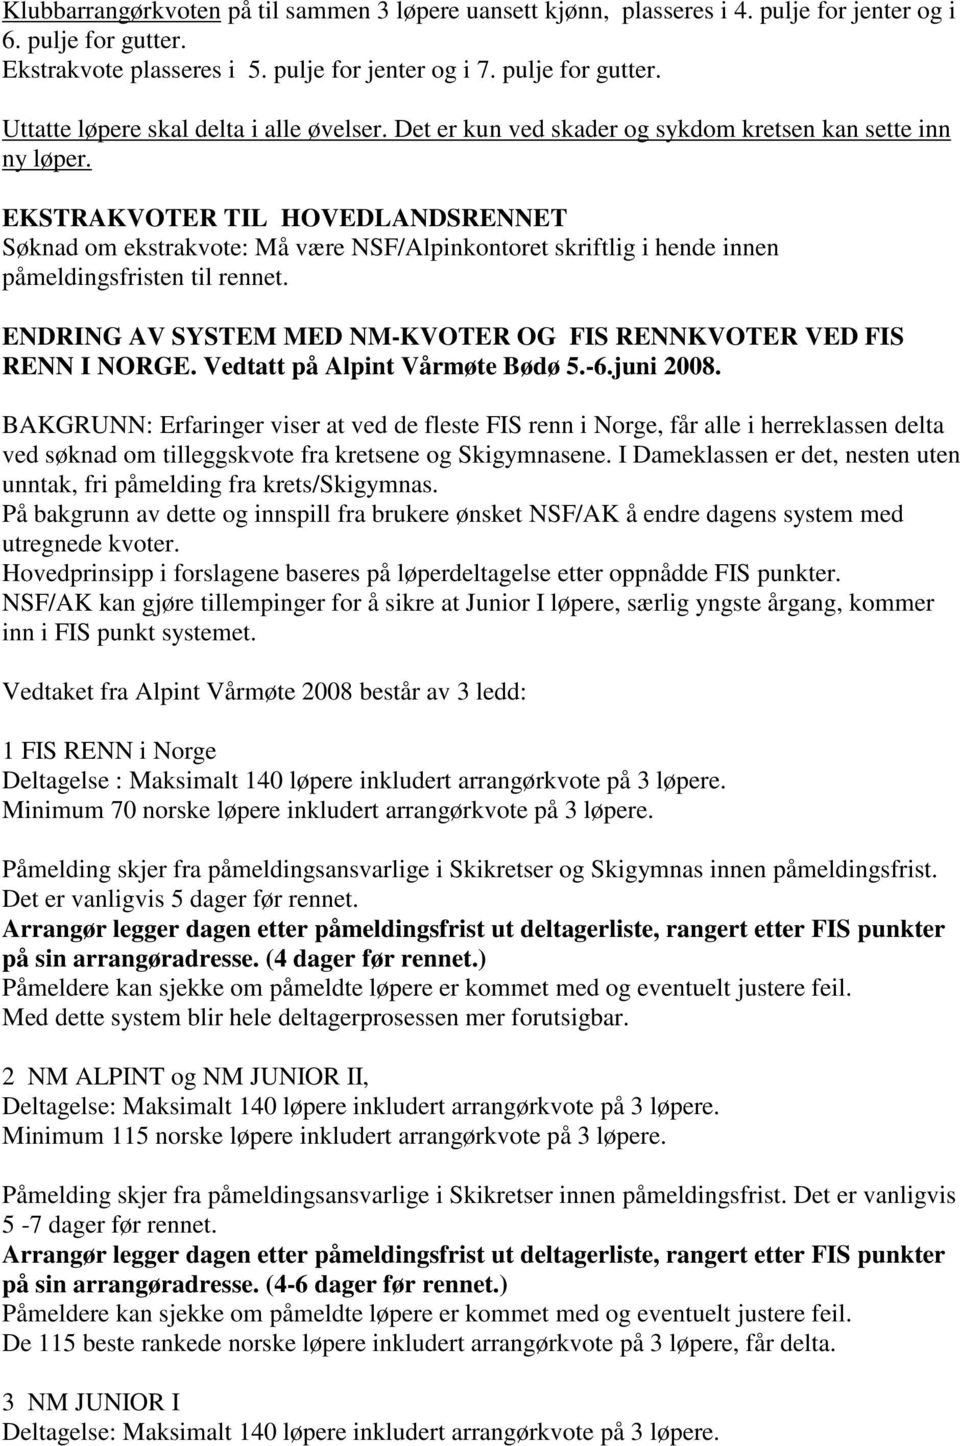 ENDRING AV SYSTEM MED NM-KVOTER OG FIS RENNKVOTER VED FIS RENN I NORGE. Vedtatt på Alpint Vårmøte Bødø 5.-6.juni 2008.